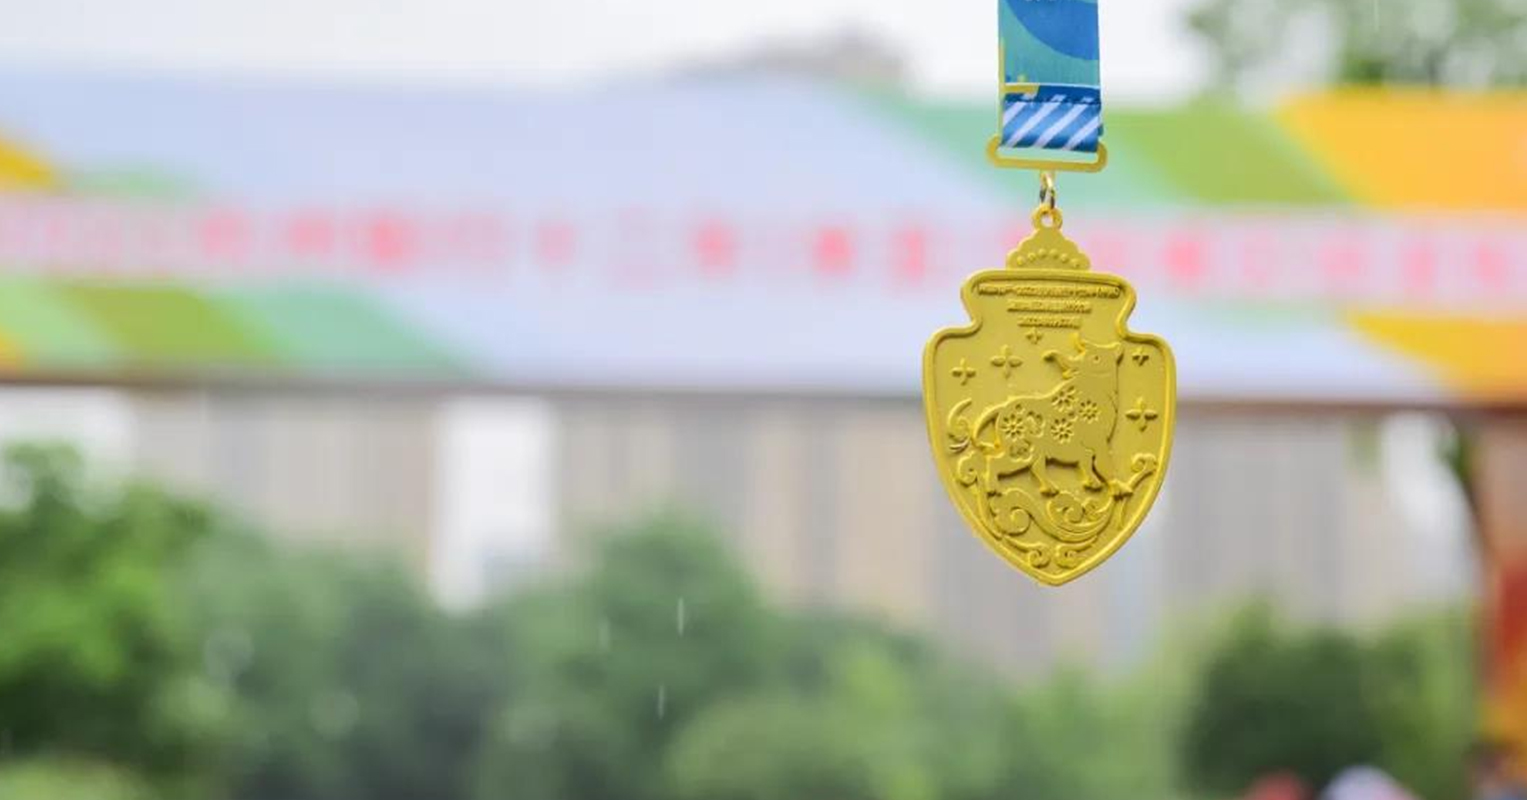 Fortalecer el cuerpo y la mente: los atletas de Supmea participaron en la conferencia de senderos de Hangzhou Greenway